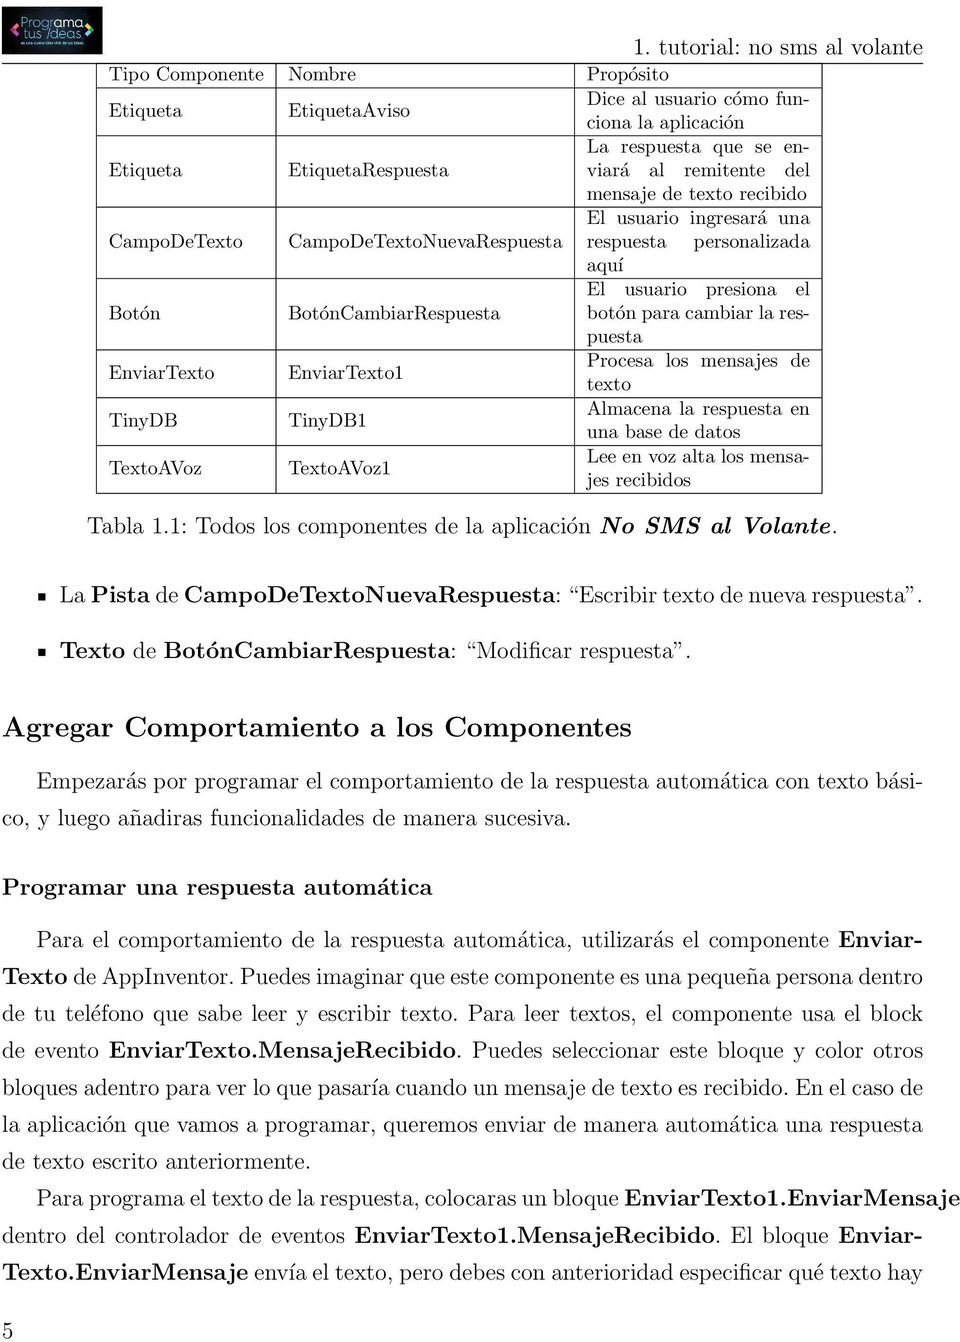 respuesta EnviarTexto EnviarTexto1 Procesa los mensajes de texto TinyDB TinyDB1 Almacena la respuesta en una base de datos TextoAVoz TextoAVoz1 Lee en voz alta los mensajes recibidos Tabla 1.